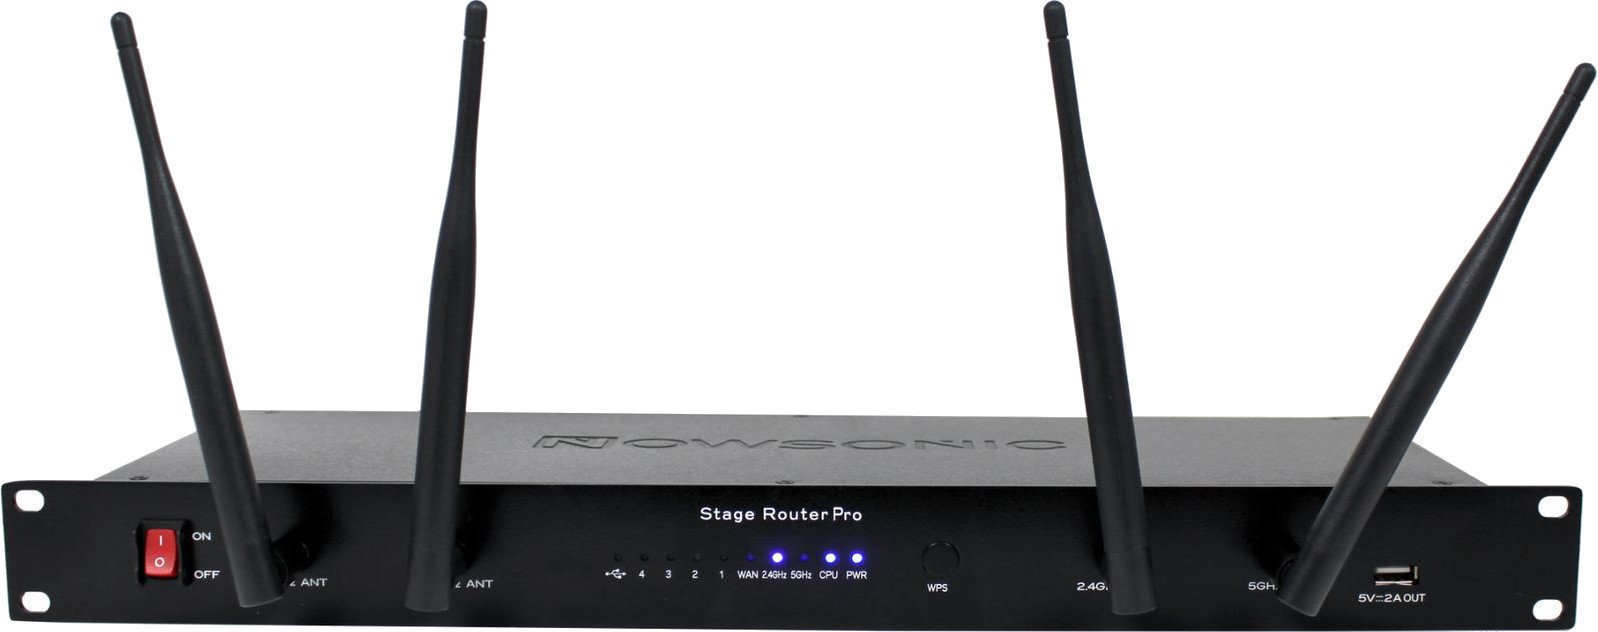 Antennin jakaja langattomille järjestelmille Nowsonic Stage Router Pro